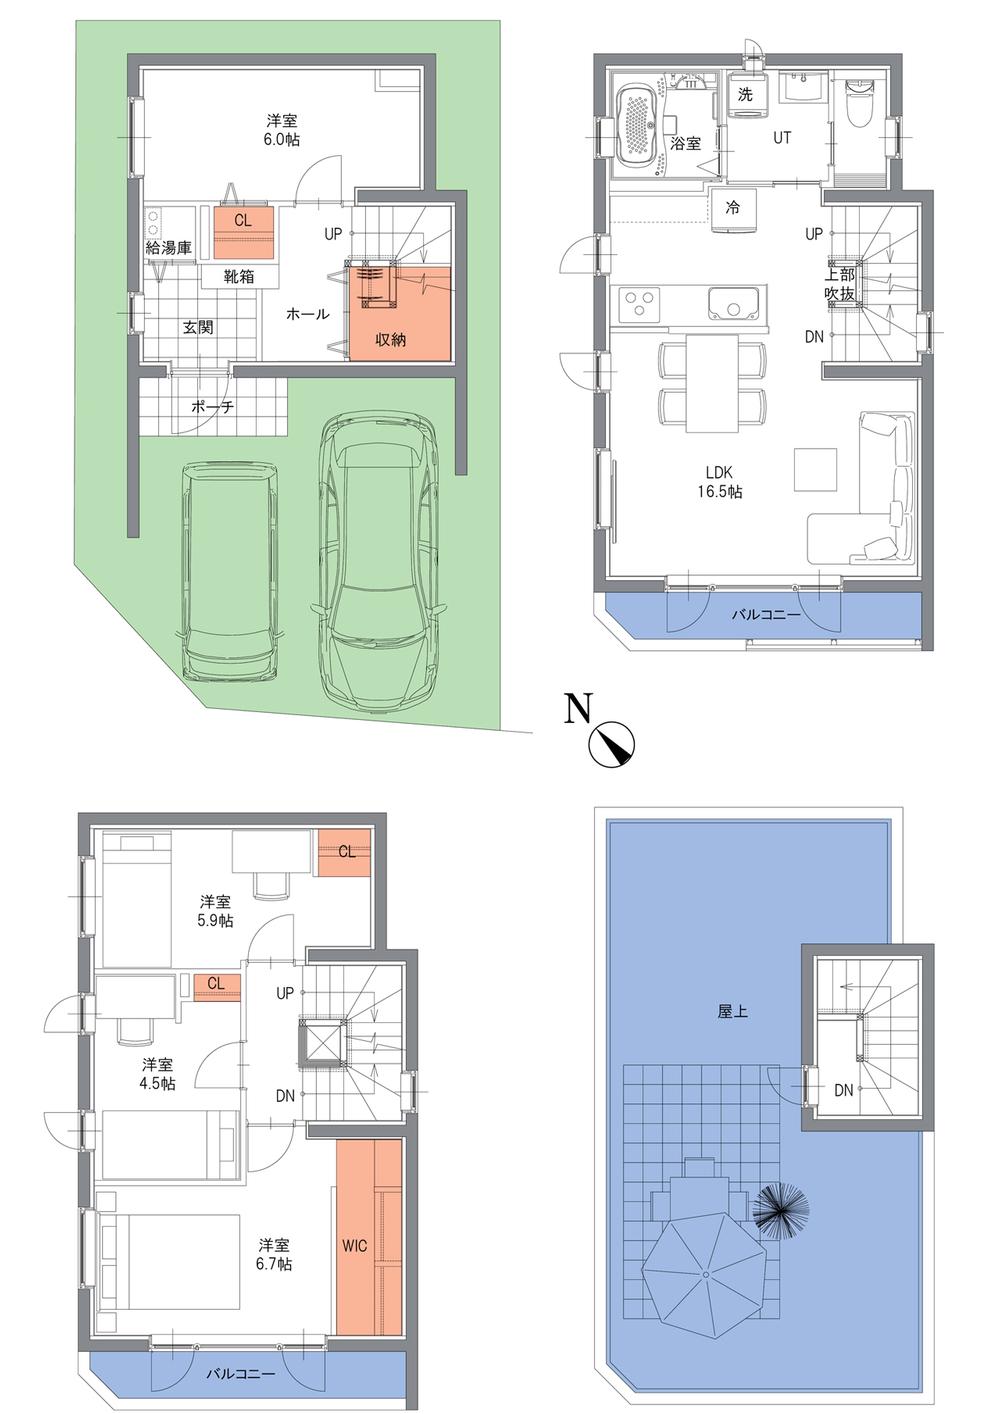 Floor plan. (A Building), Price 30,800,000 yen, 4LDK, Land area 67.6 sq m , Building area 112.64 sq m